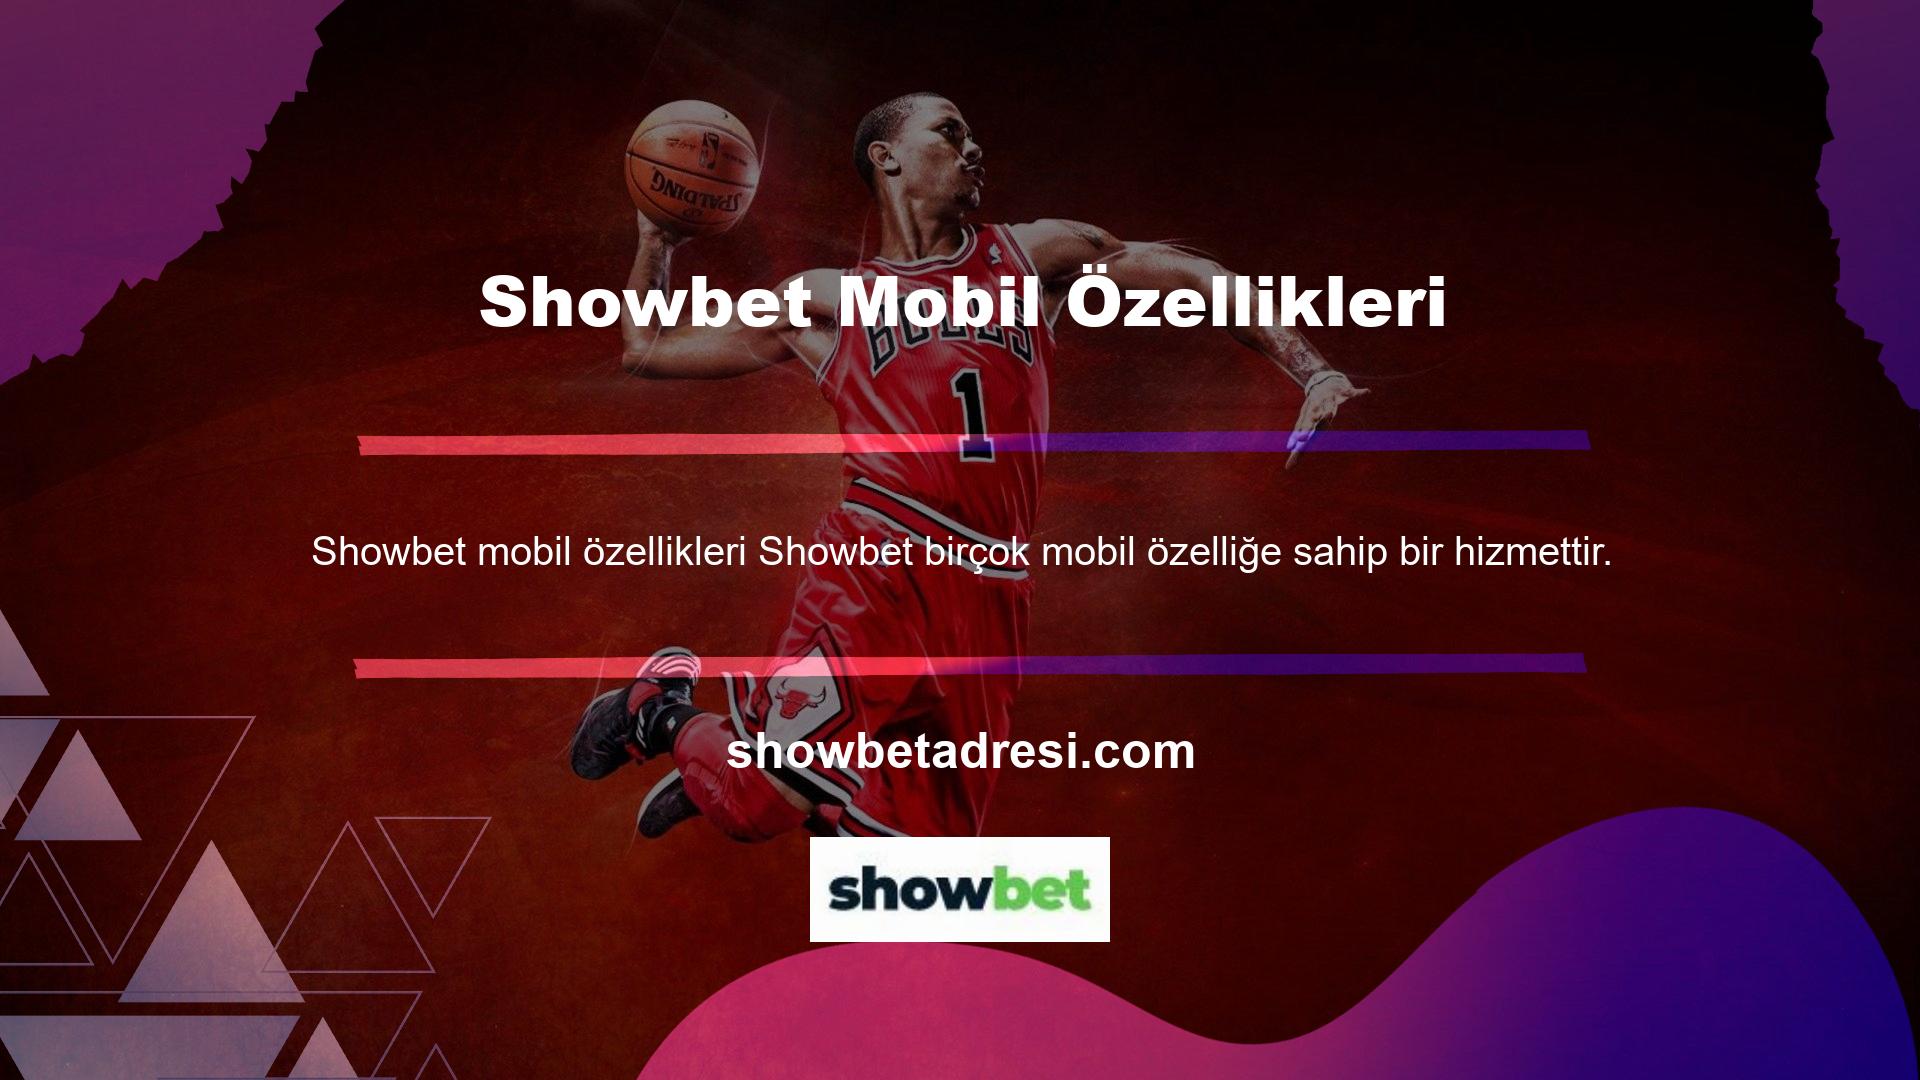 Showbet web sitesi gerekli altyapıyı sağladı ve casino tutkunlarının en büyük özlemlerinden biri olan mobil uygulamayı tanıttı